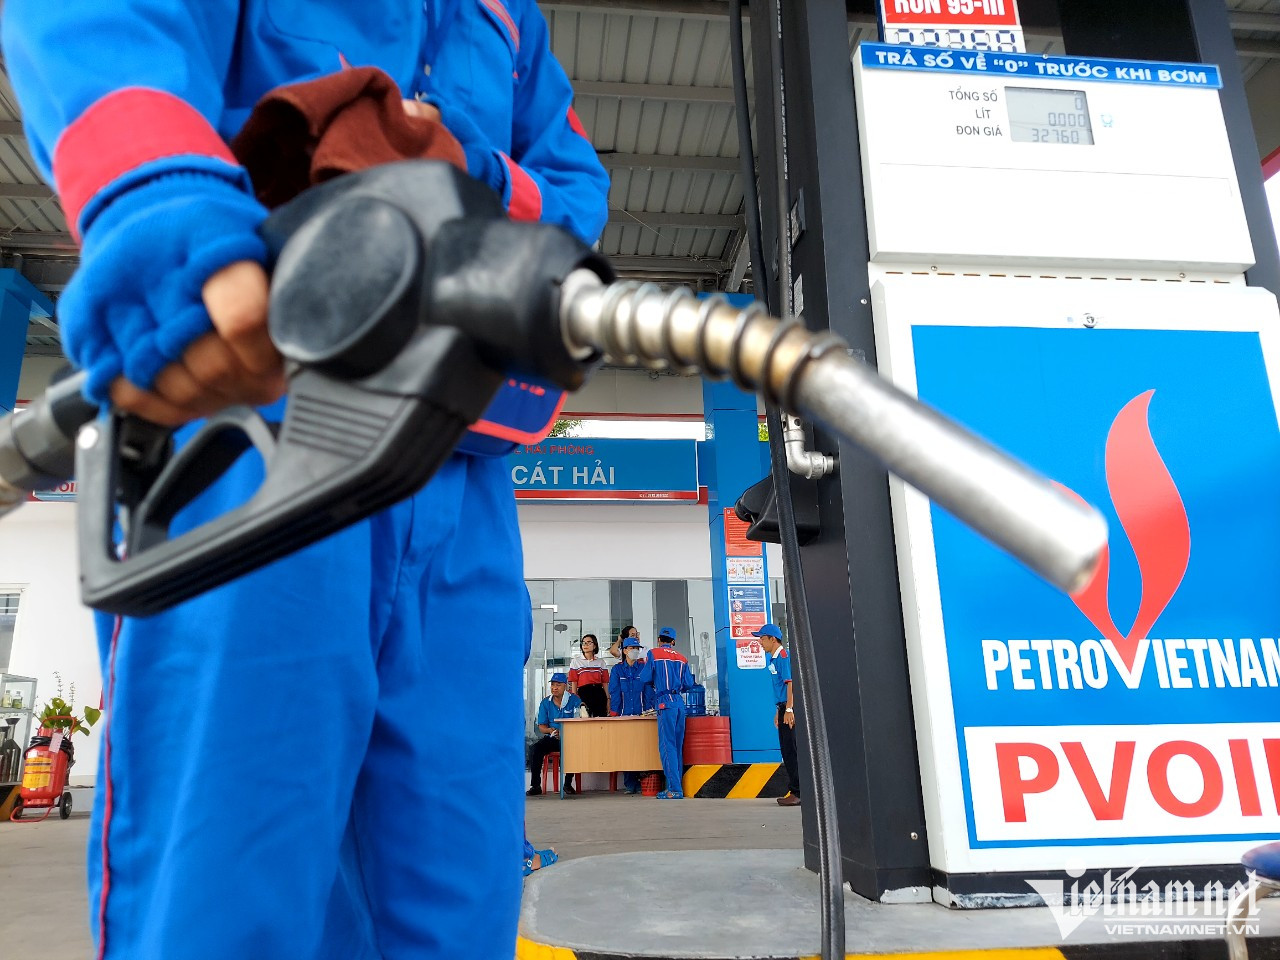 Lo nguồn cung bất ổn, Bộ Tài chính đề xuất giảm thuế nhập khẩu xăng